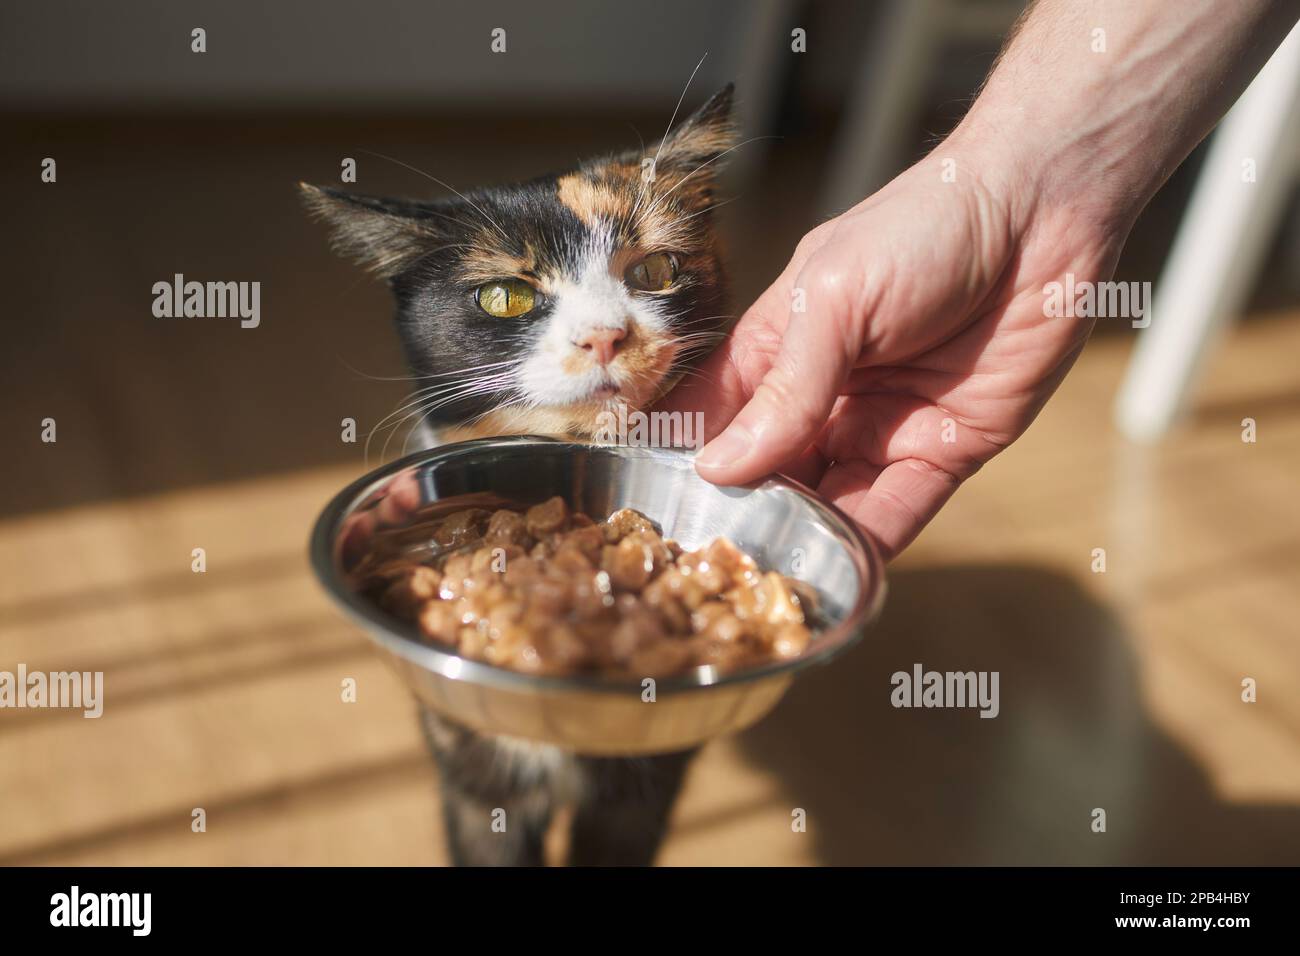 La vie domestique avec les animaux. Homme donnant nourrir son chat affamé à la maison. Banque D'Images